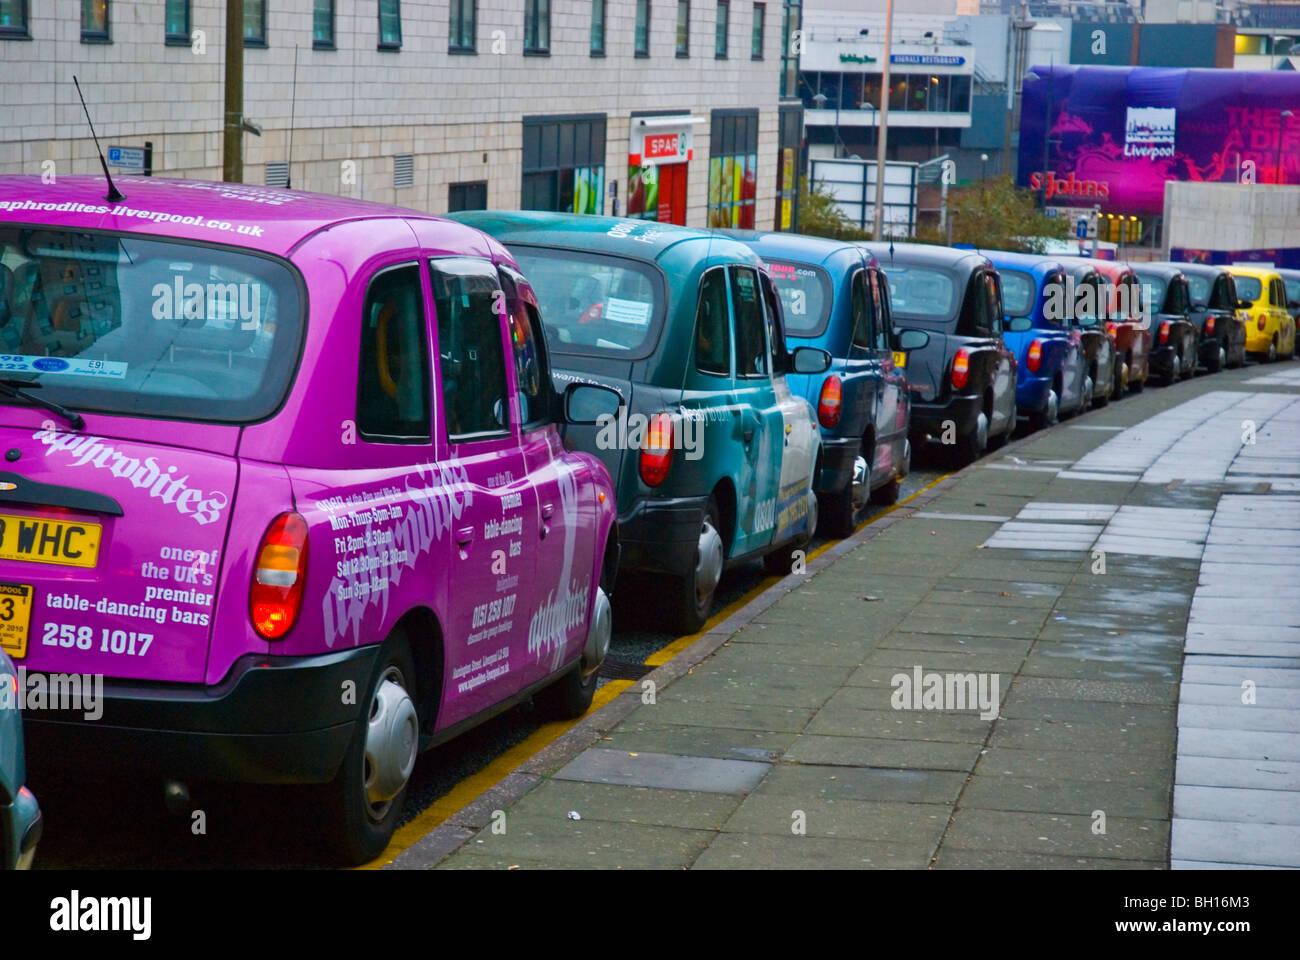 Des taxis attendent devant la gare de Lime Street, dans le centre de Liverpool Angleterre Angleterre Europe Banque D'Images